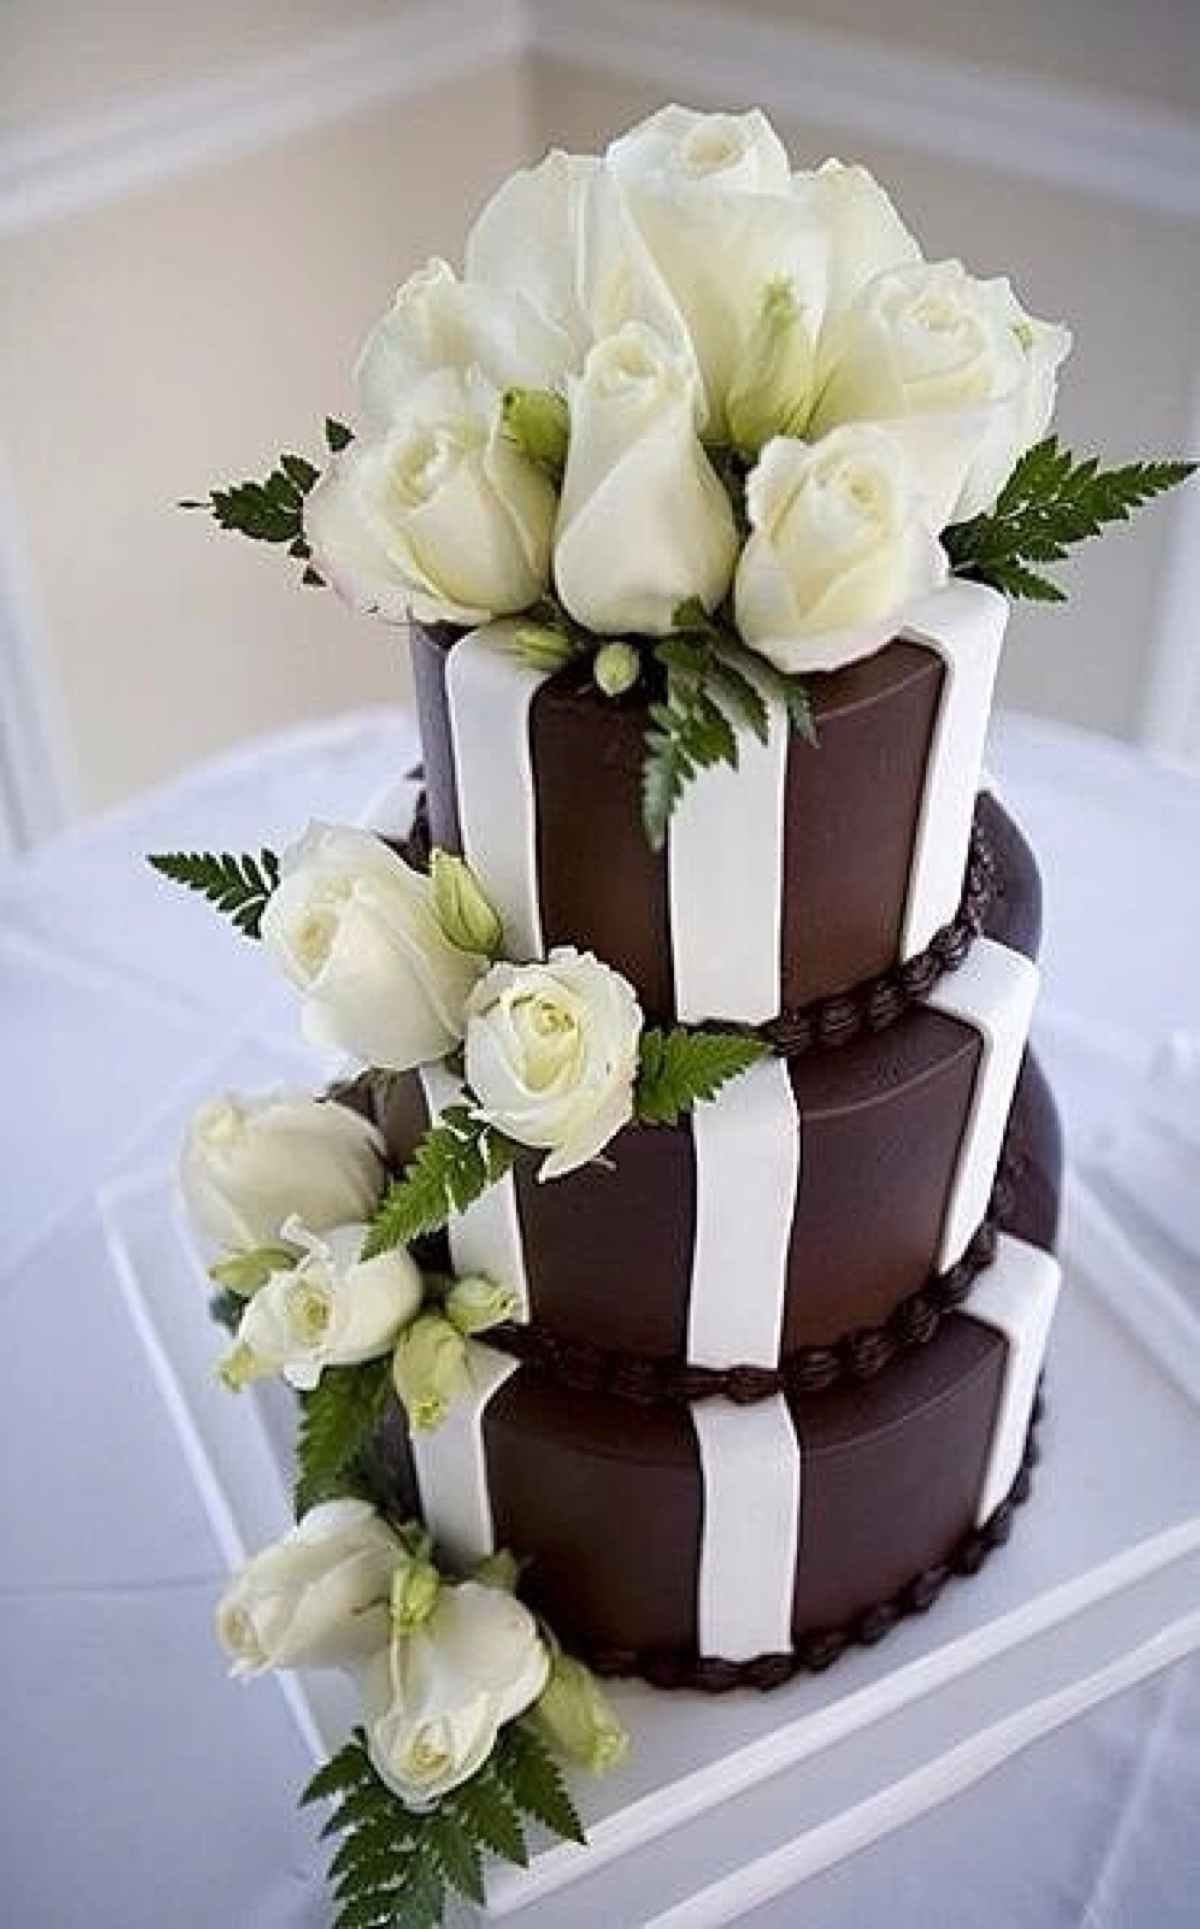 翻糖 婚礼 鲜花 巧克力 蛋糕 甜点